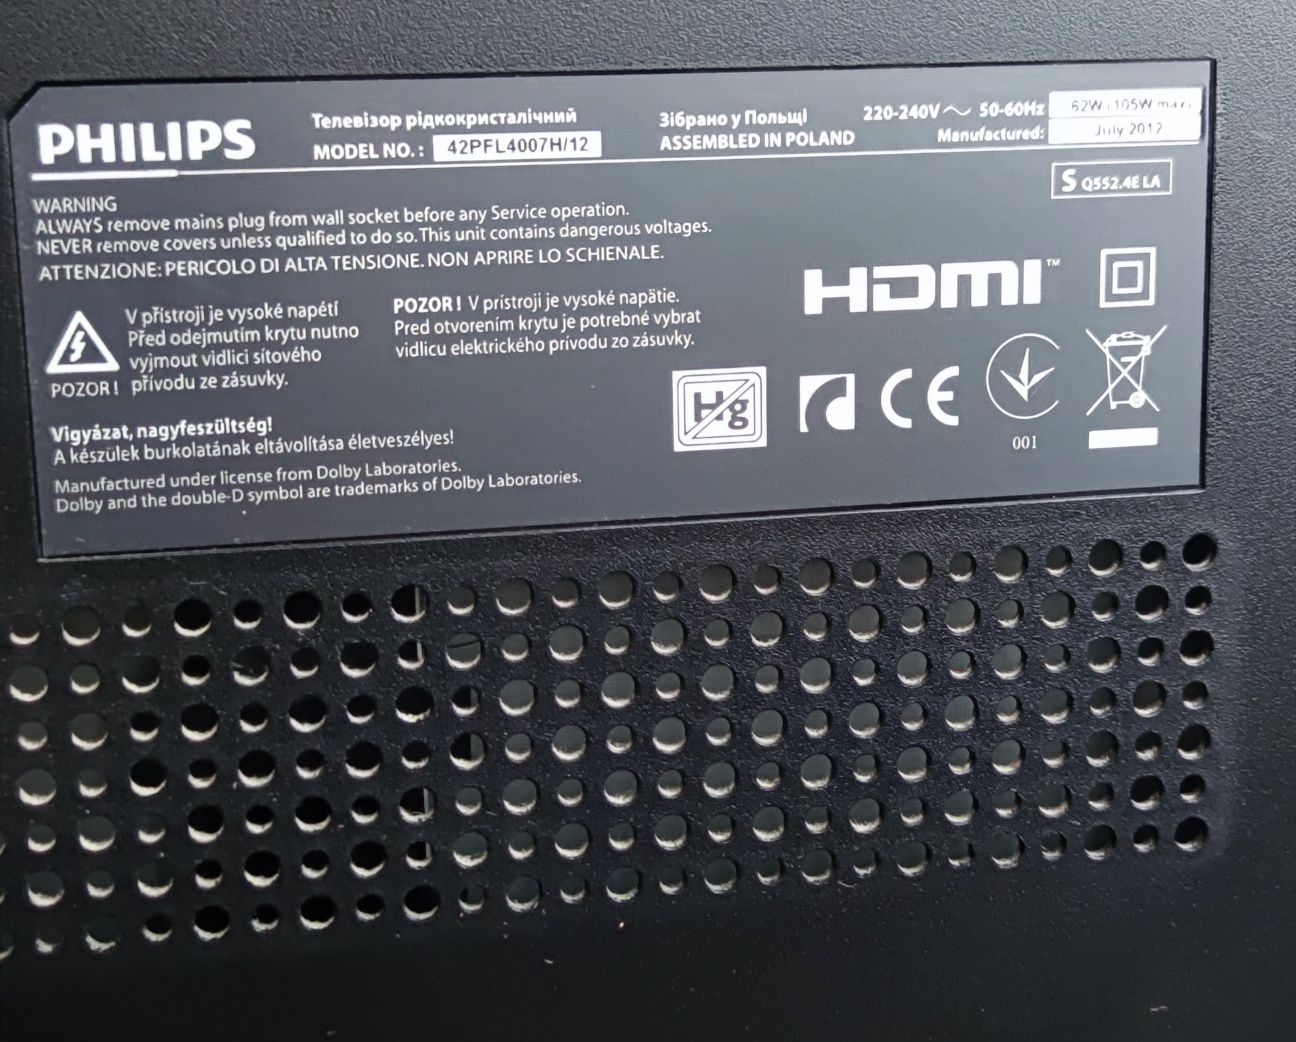 Телевизор Philips 42PFL4007 H/12